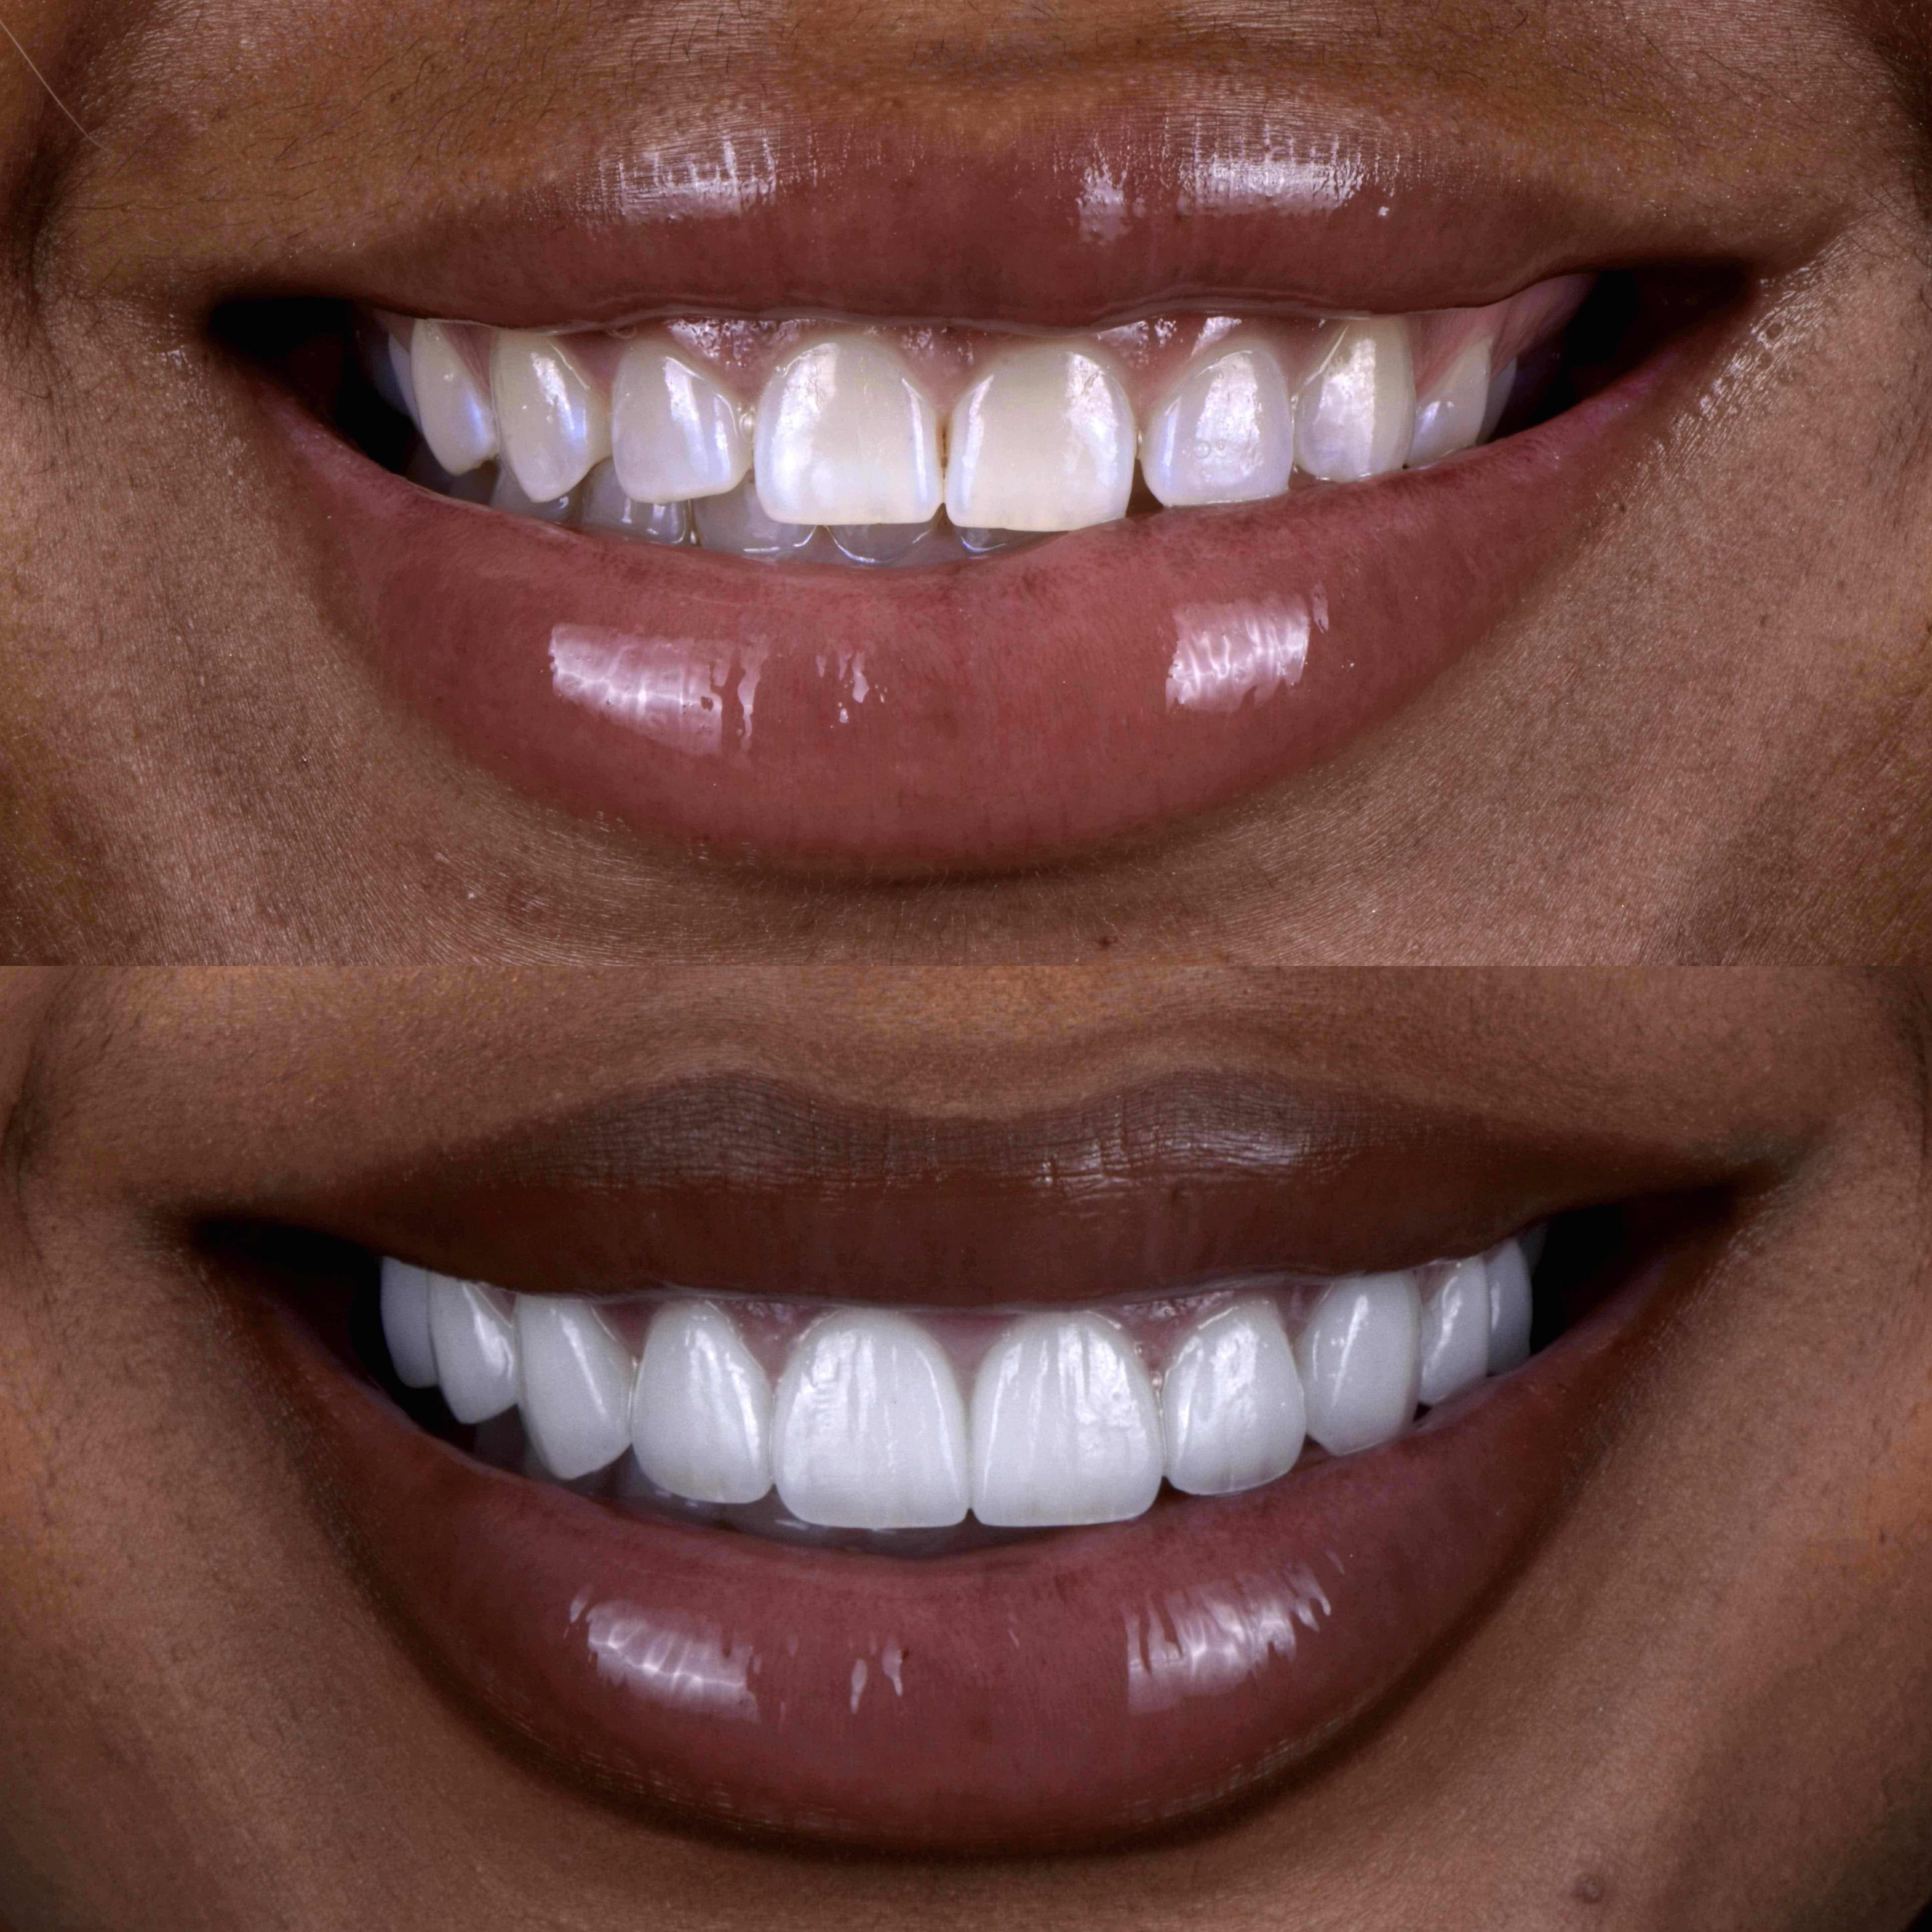 Gallery of veneers results from Beverly Hills dental practice